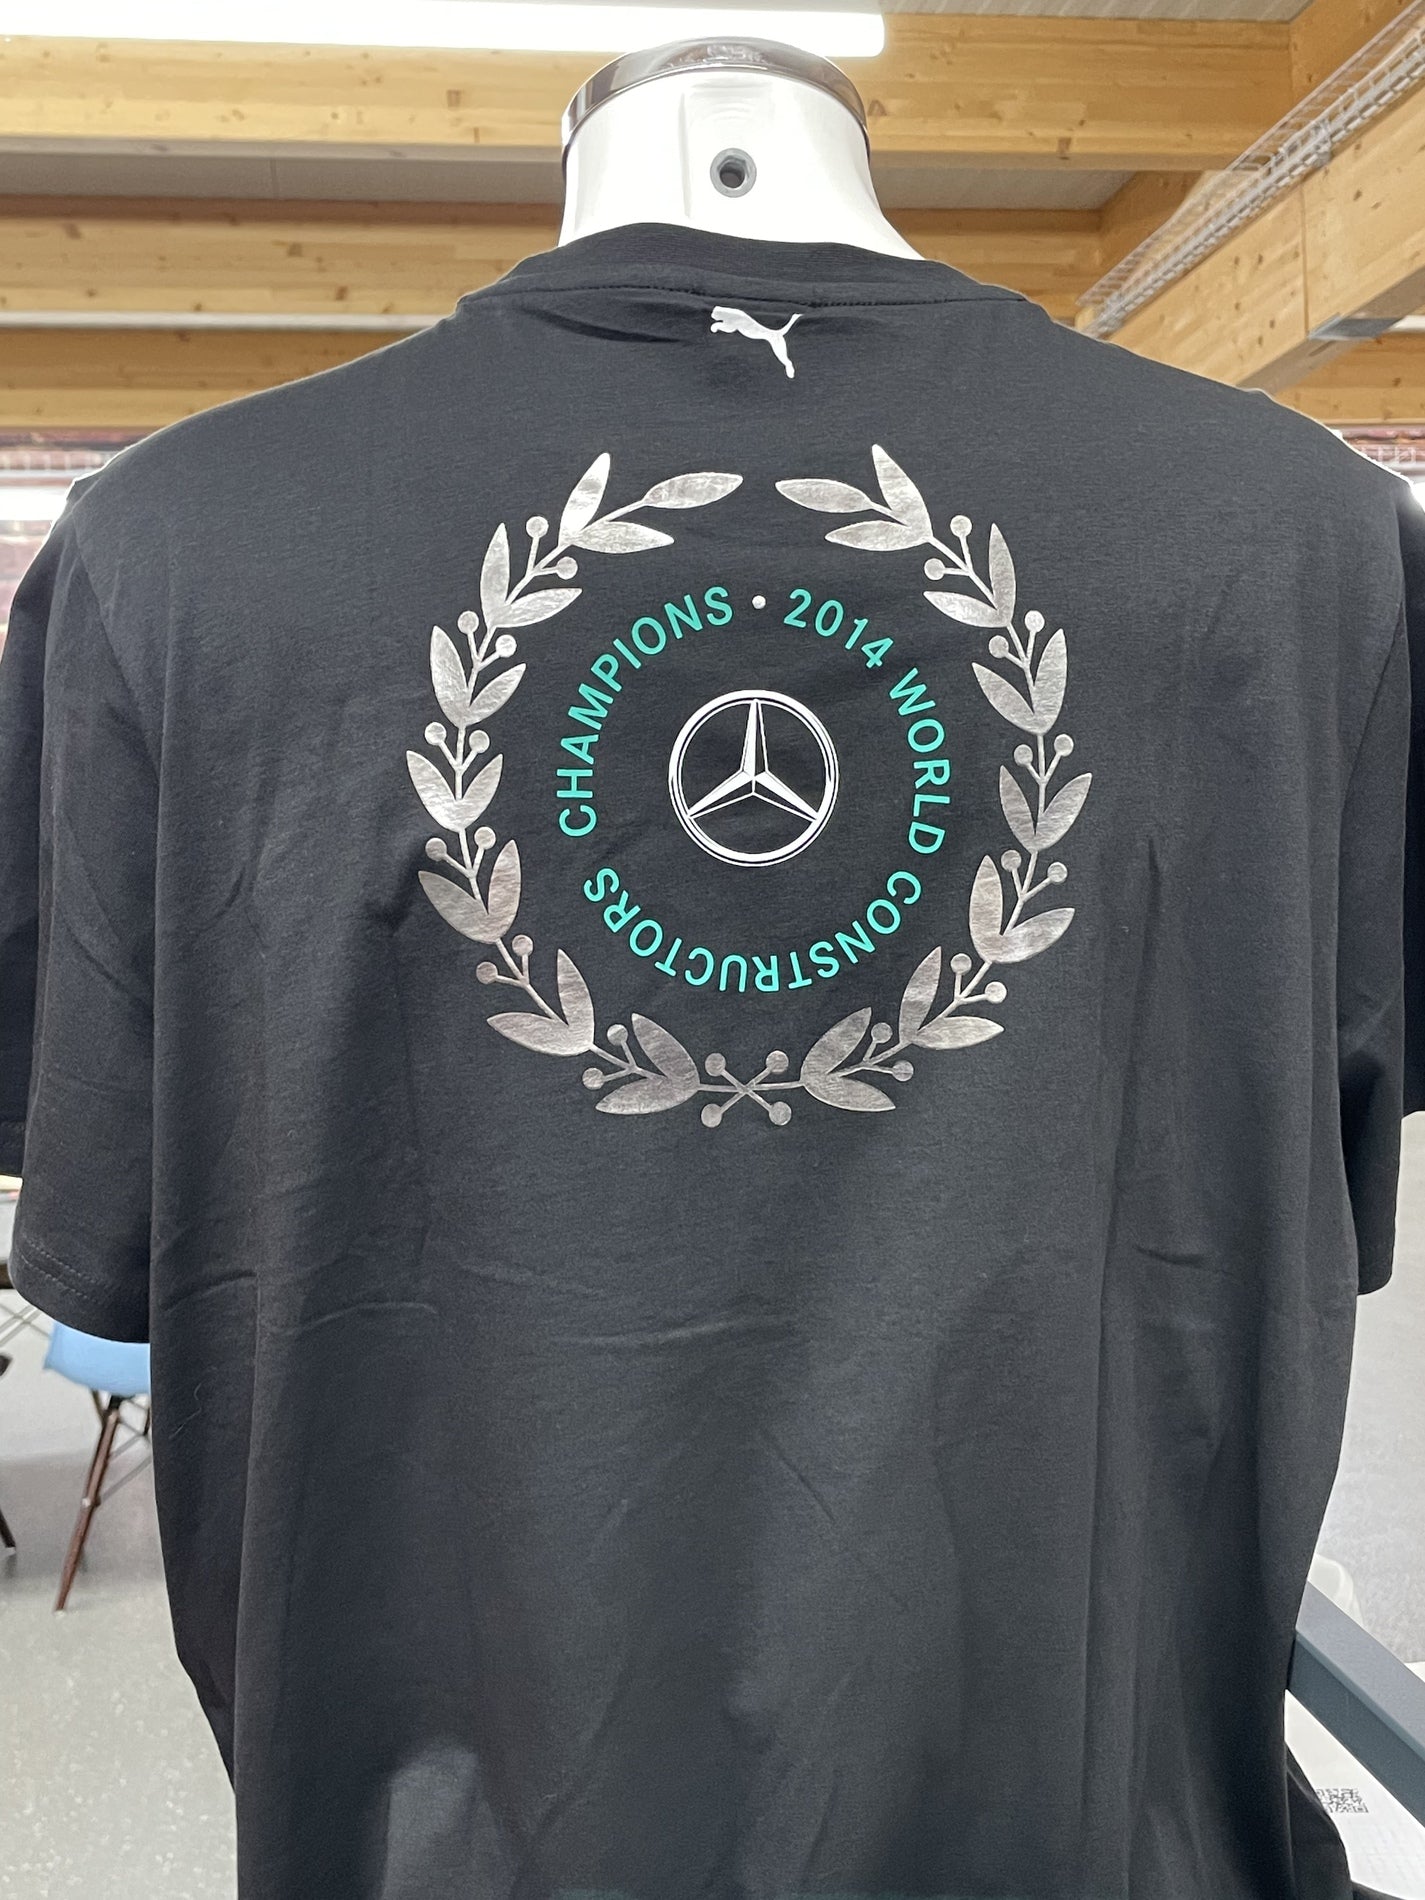 Premium Fan T-Shirt in schwarz mit diversen Aufdrucken F1 World Champion 2014